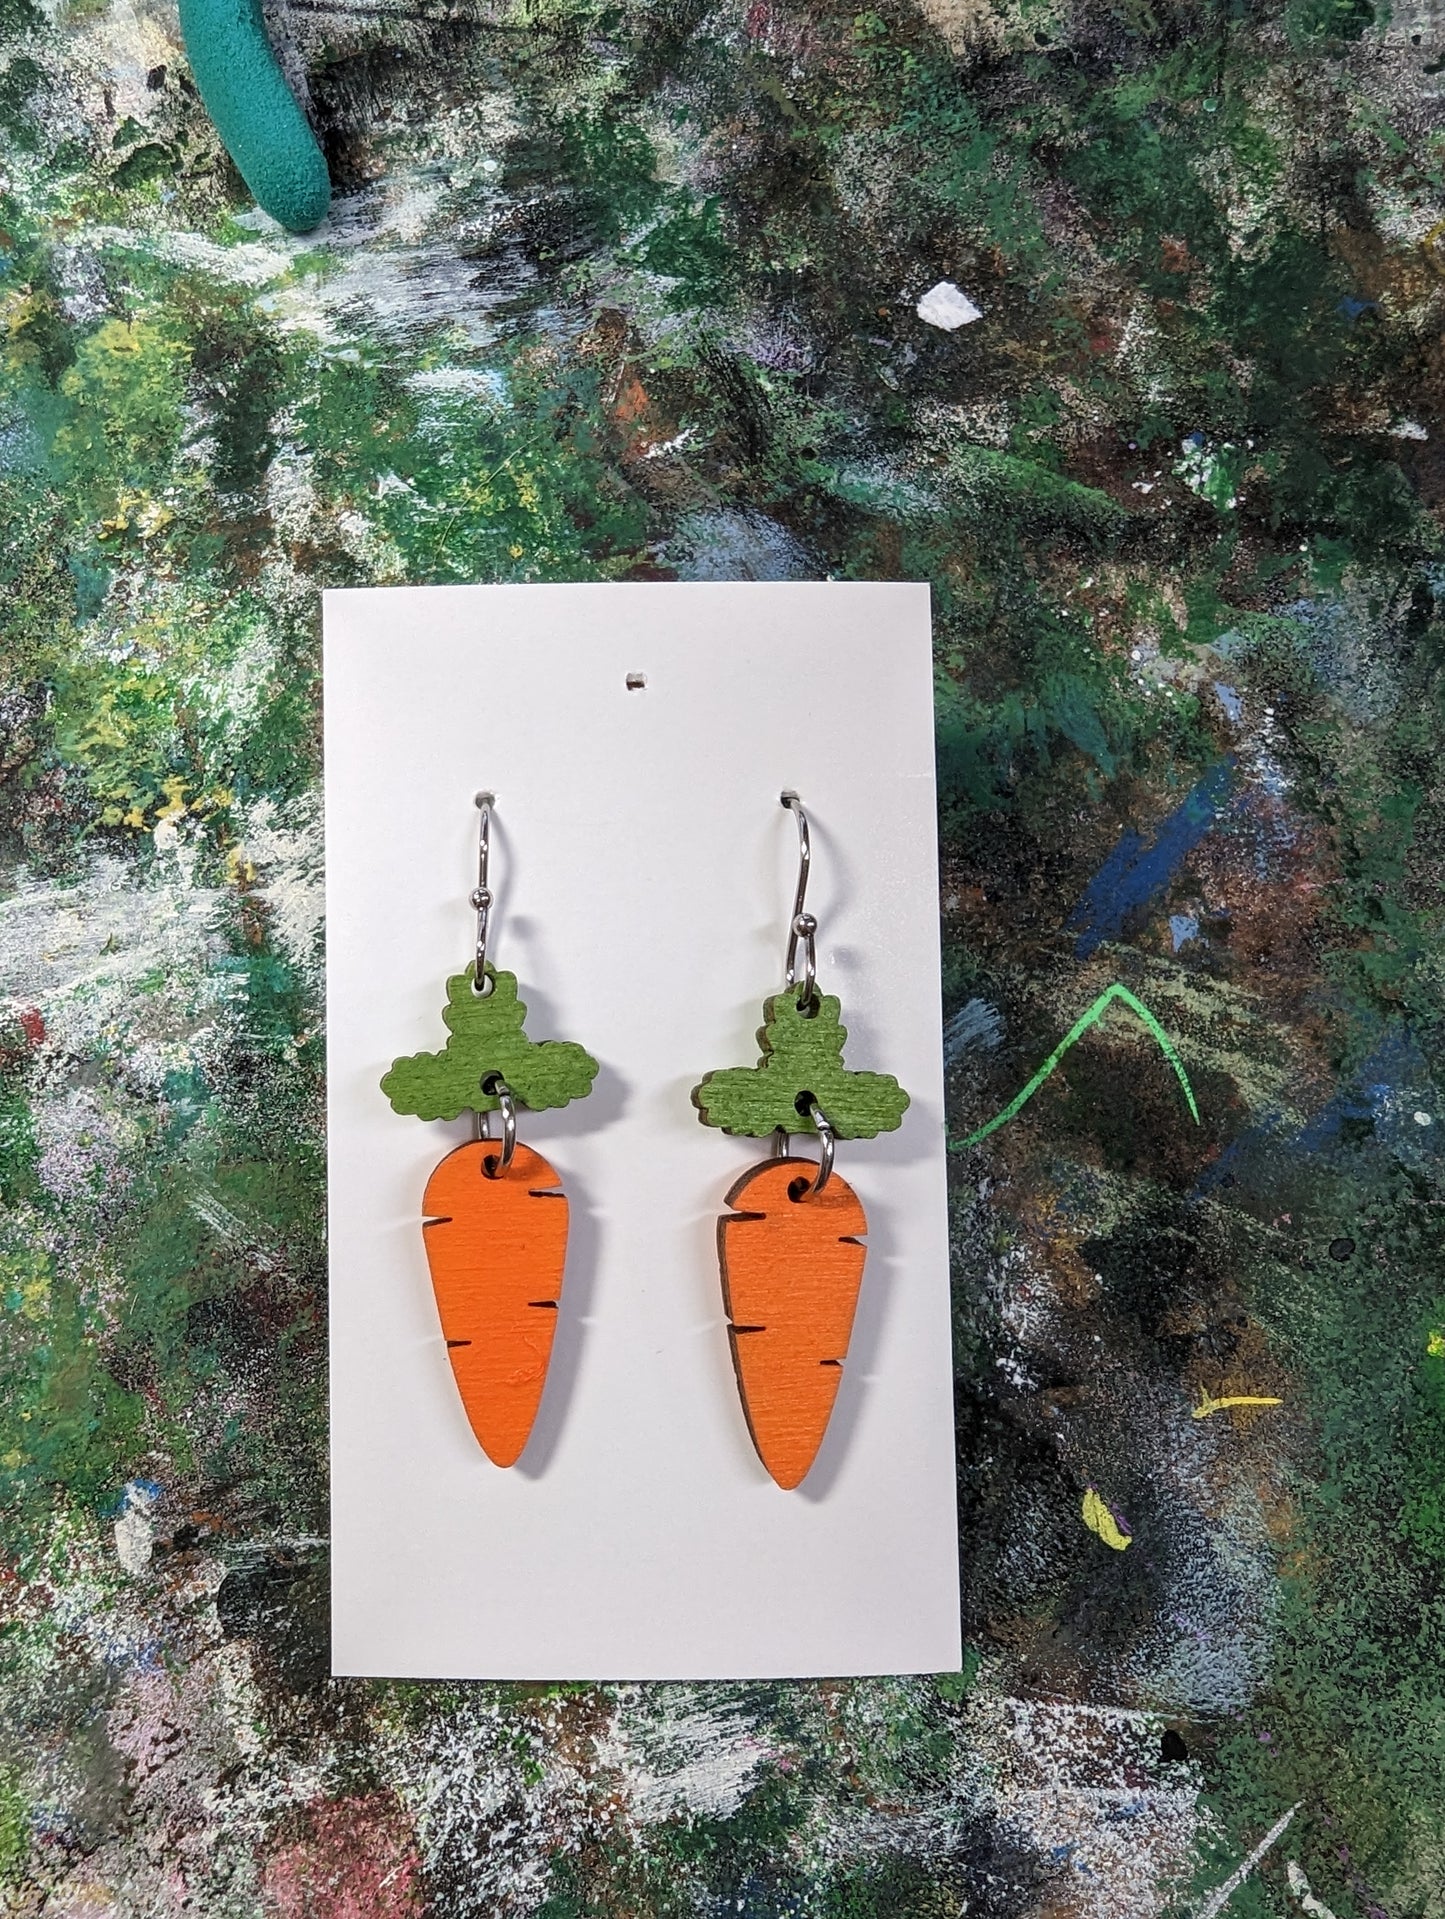 Carrot earrings for Easter